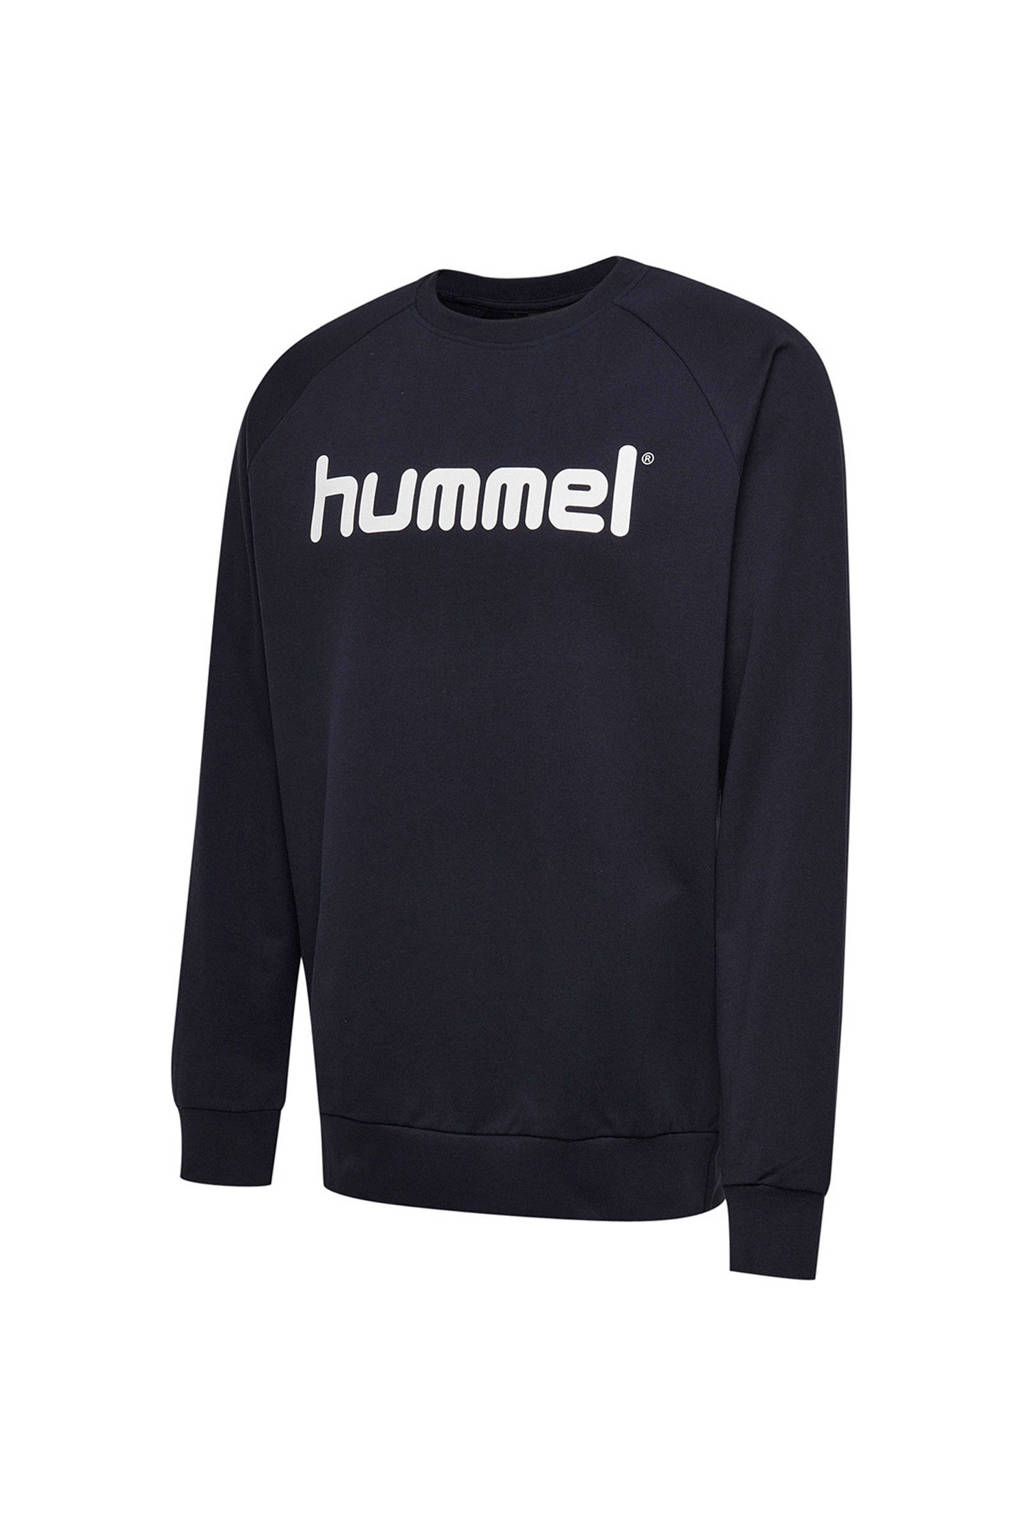 Schat Schipbreuk voetstuk hummel sweater met logo donkerblauw | wehkamp